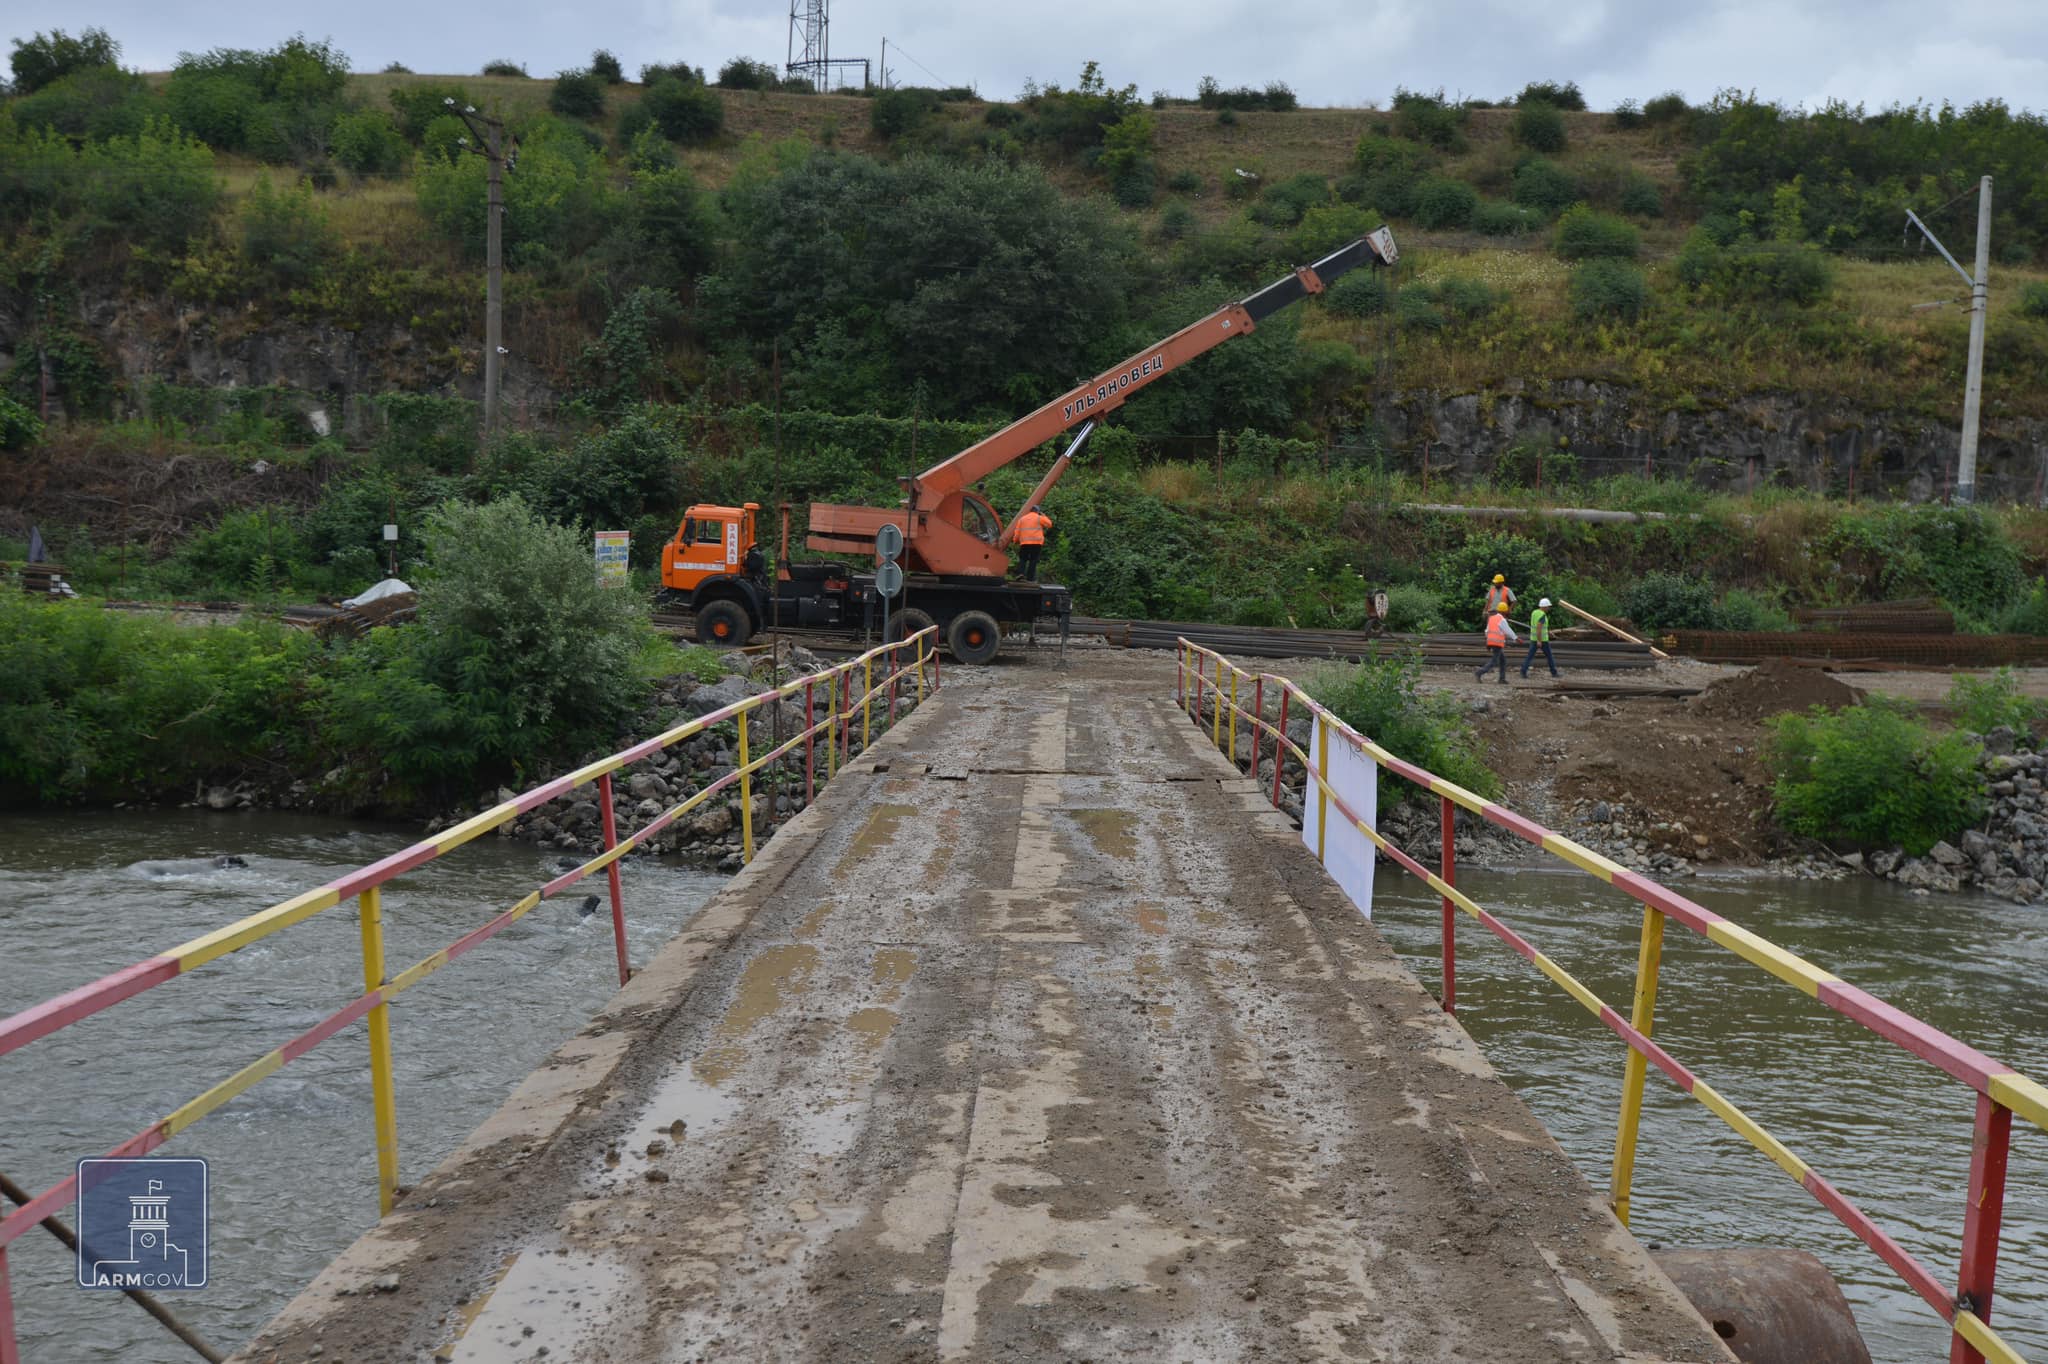 Տեղադրվել է Սադախլո-Բագրատաշեն անցման կետում նոր կամրջի շինարարության սկիզբը խորհրդանշող հիմնաքար